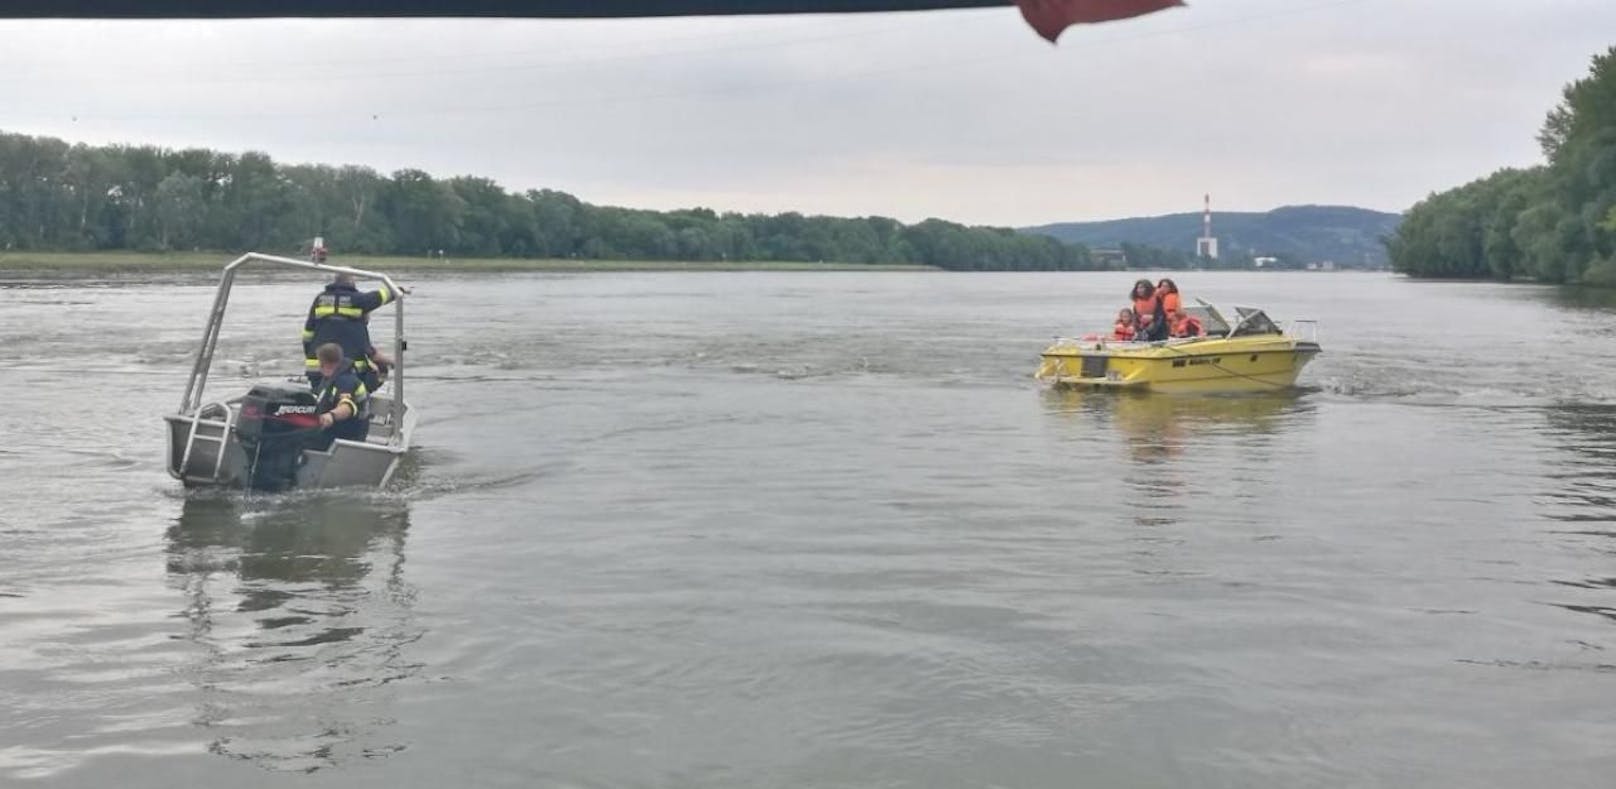 Motorboot lief auf Grund: Kinder auf Donau in Not